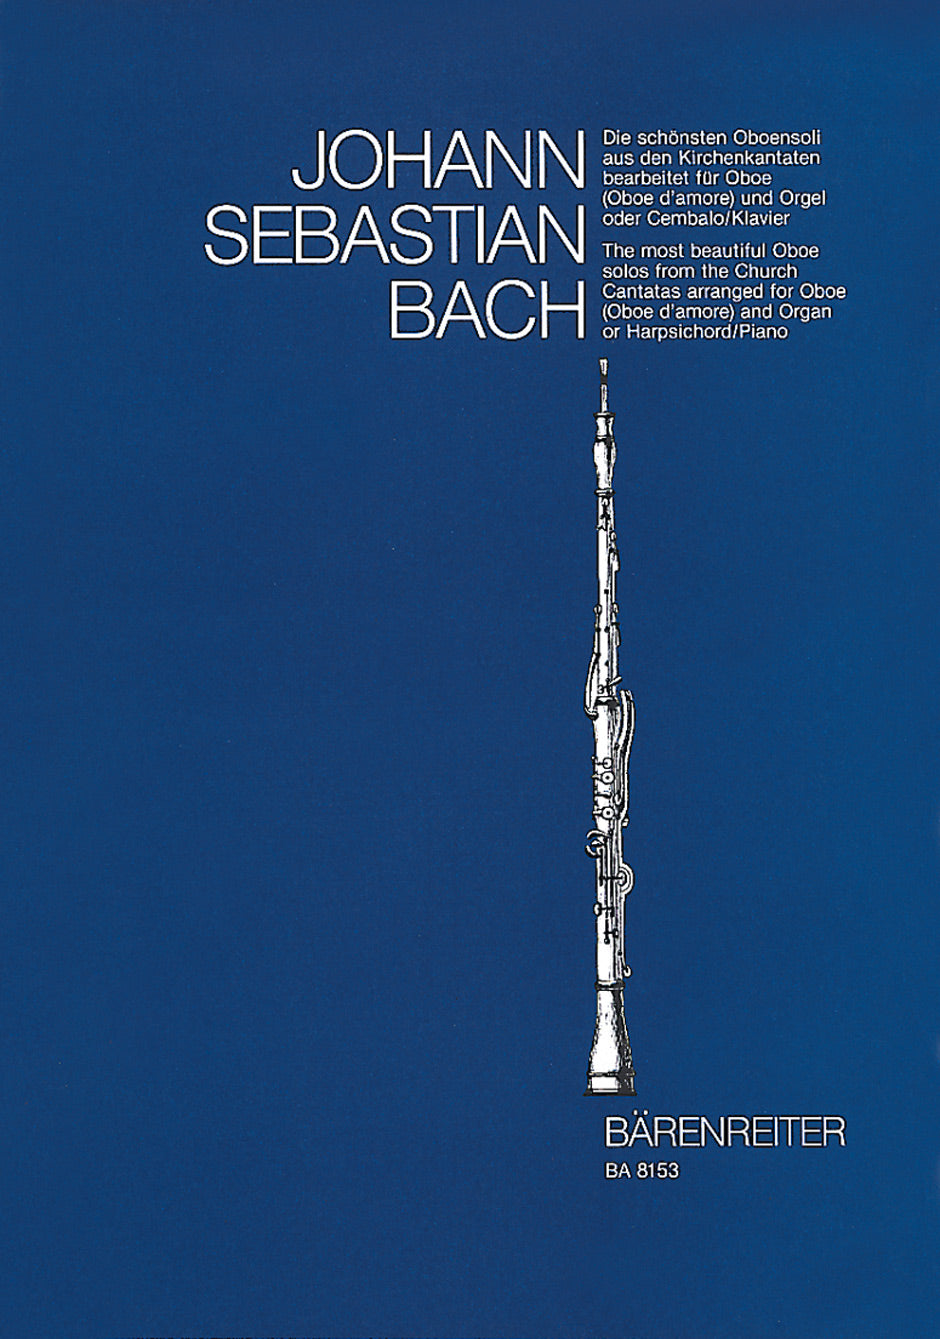 Bach Die schönsten Oboensoli aus den Kirchenkantaten BWV 12, 21, 76, 156, 249 -fünf Sinfonien mit obligater Oboe (Oboe d'amore)- (bearbeitet für Soloinstrument und Orgel (Cembalo)) (Stimme für beide Instrumente)